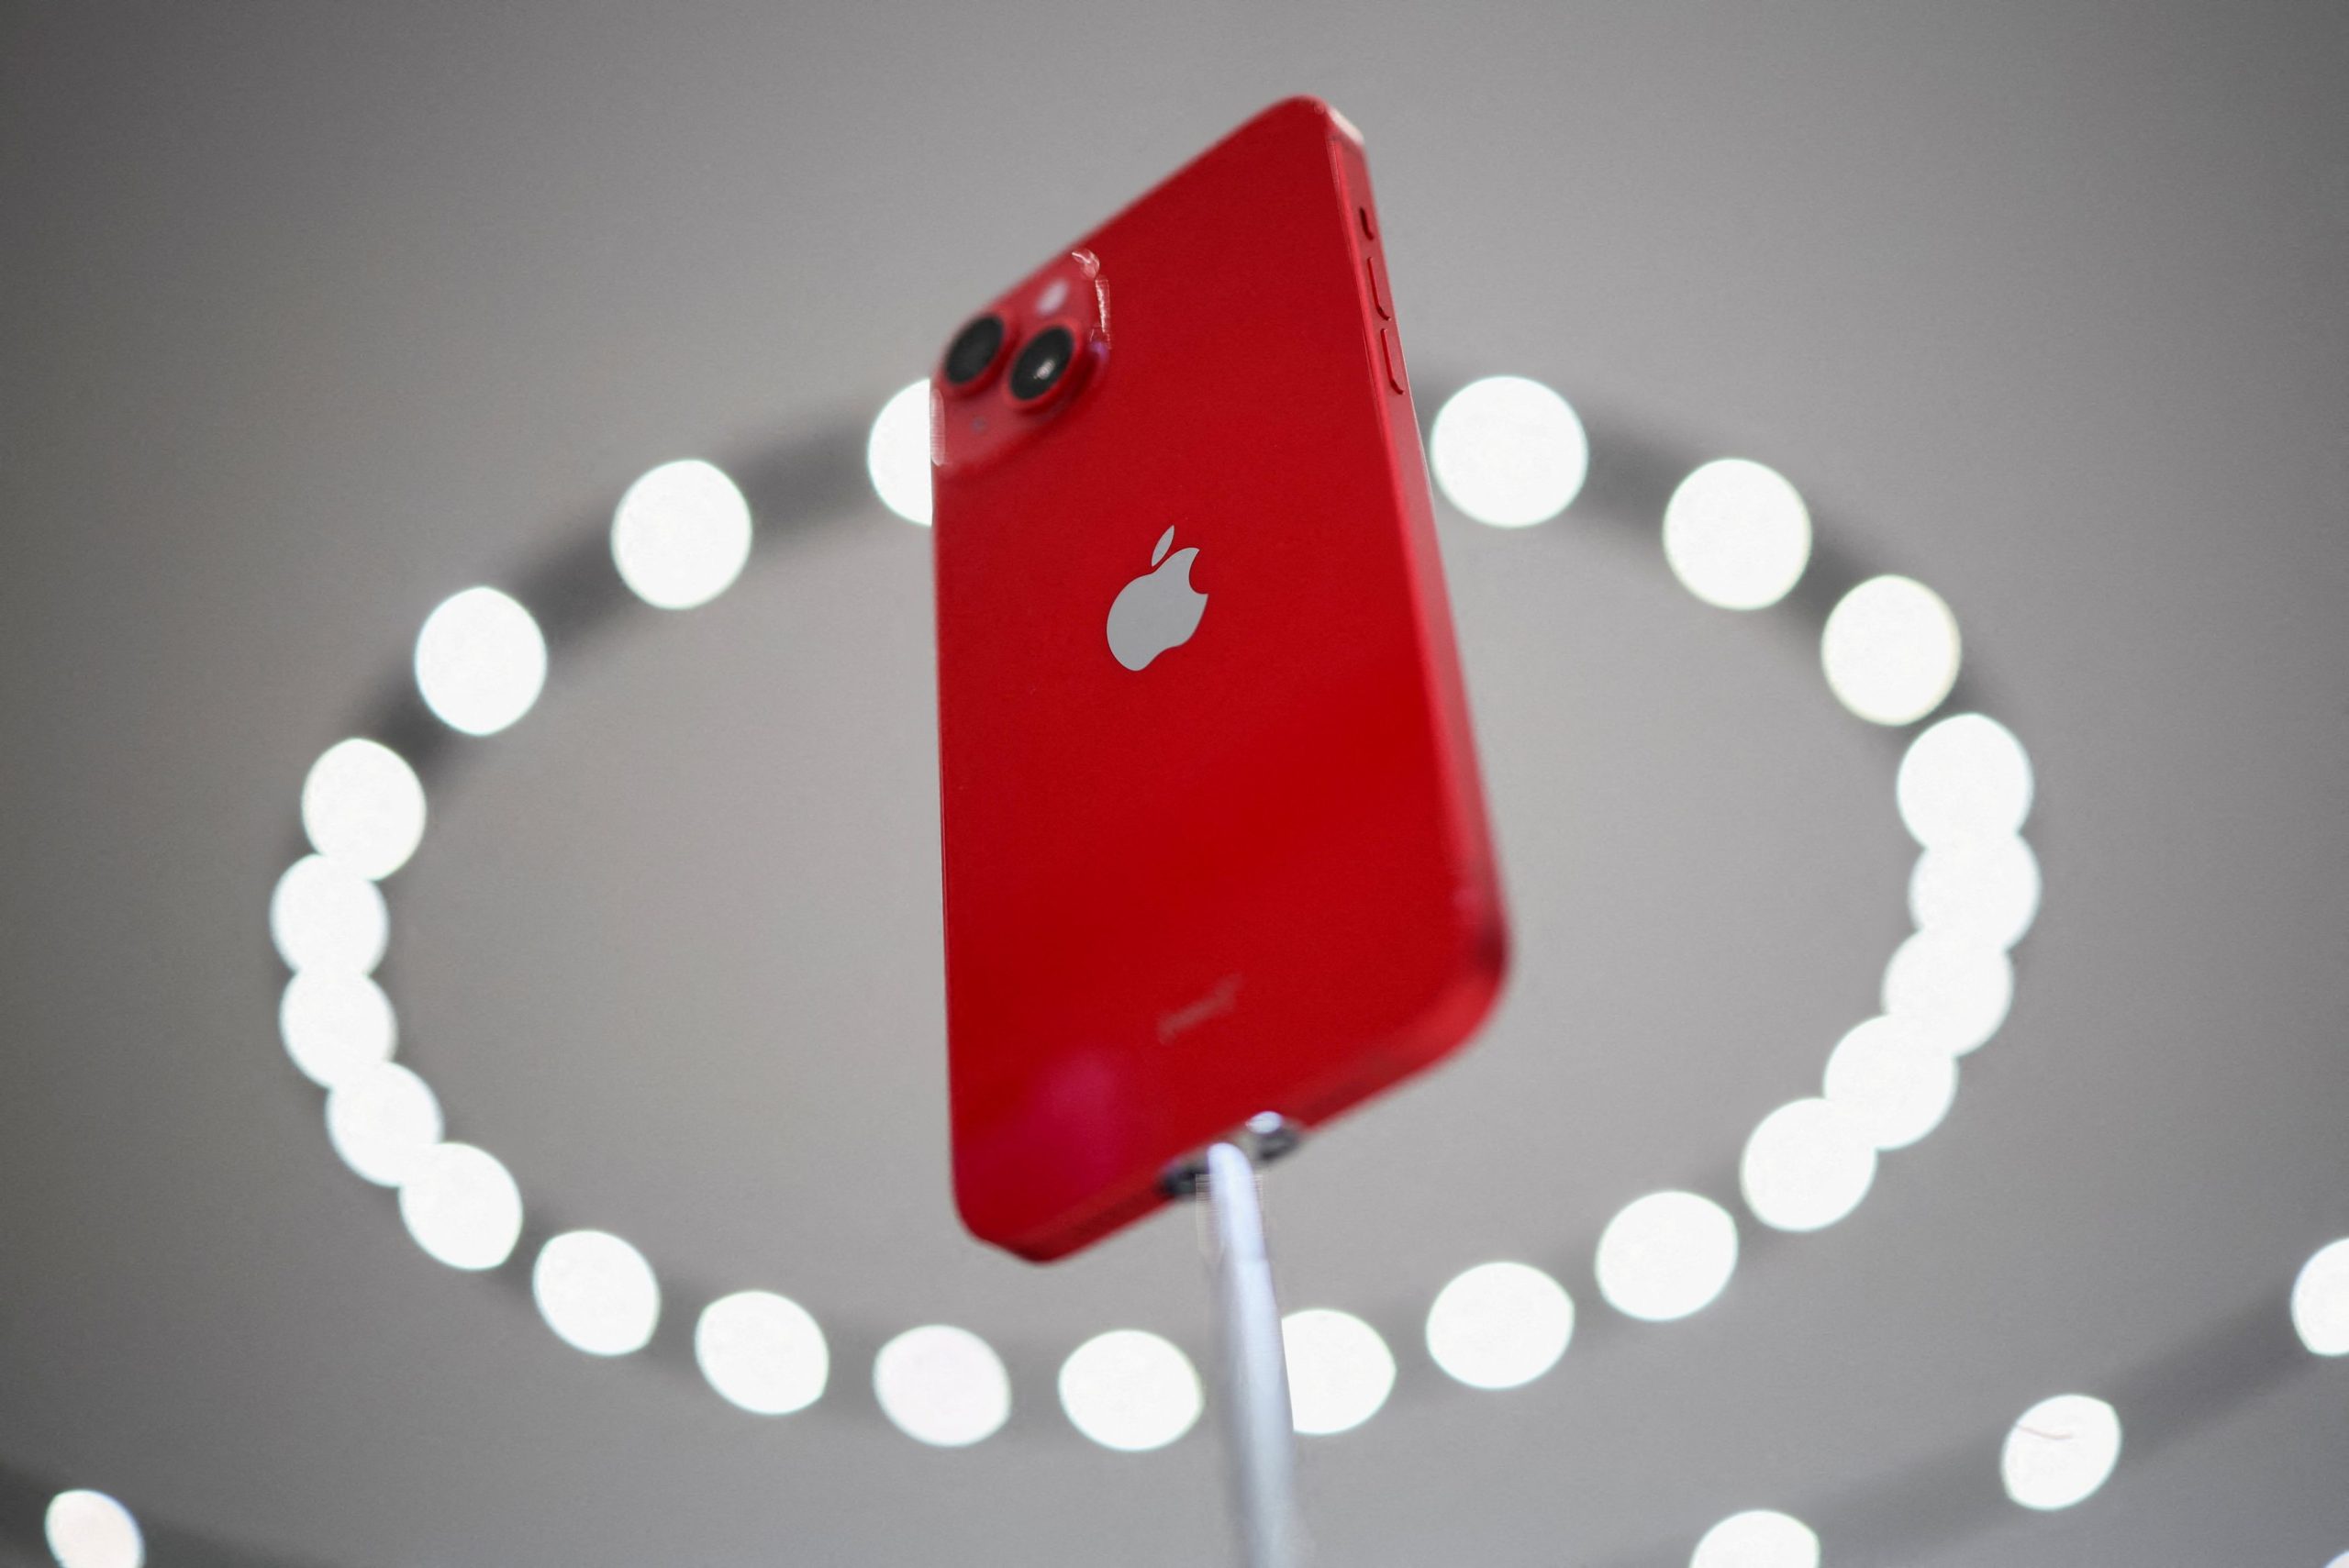 Αpple: Η πολιτική μηδενικού covid της Κίνας θα επηρεάσει τις πωλήσεις iPhone